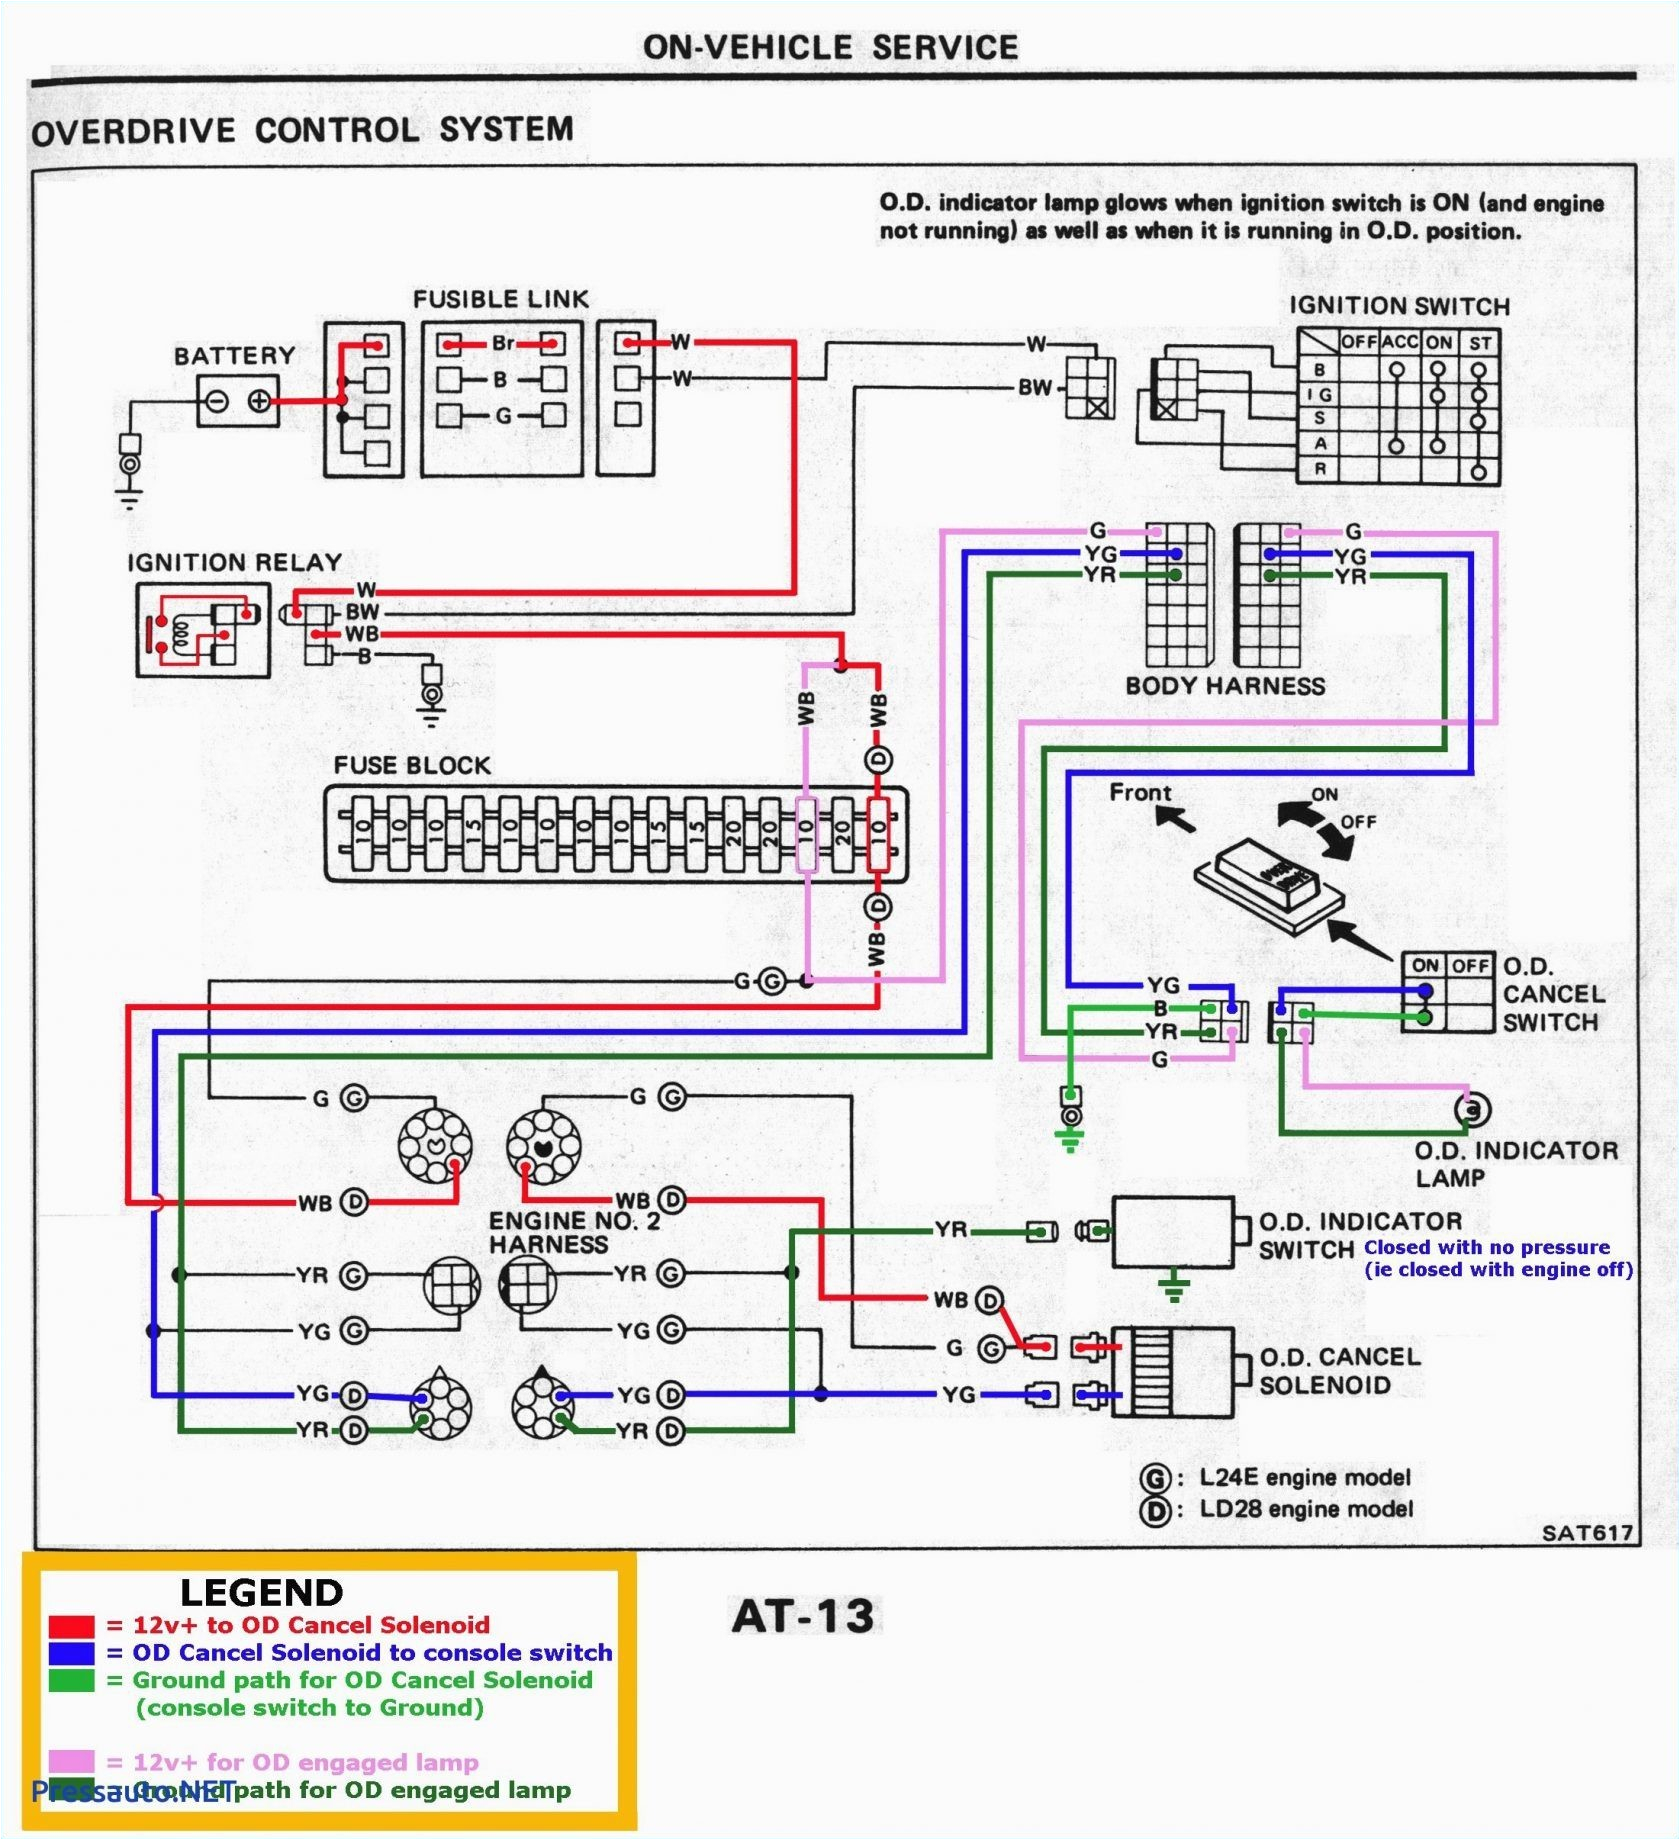 wiring diagram for vintage shasta c er wiring diagram article review wiring diagram for vintage shasta c er